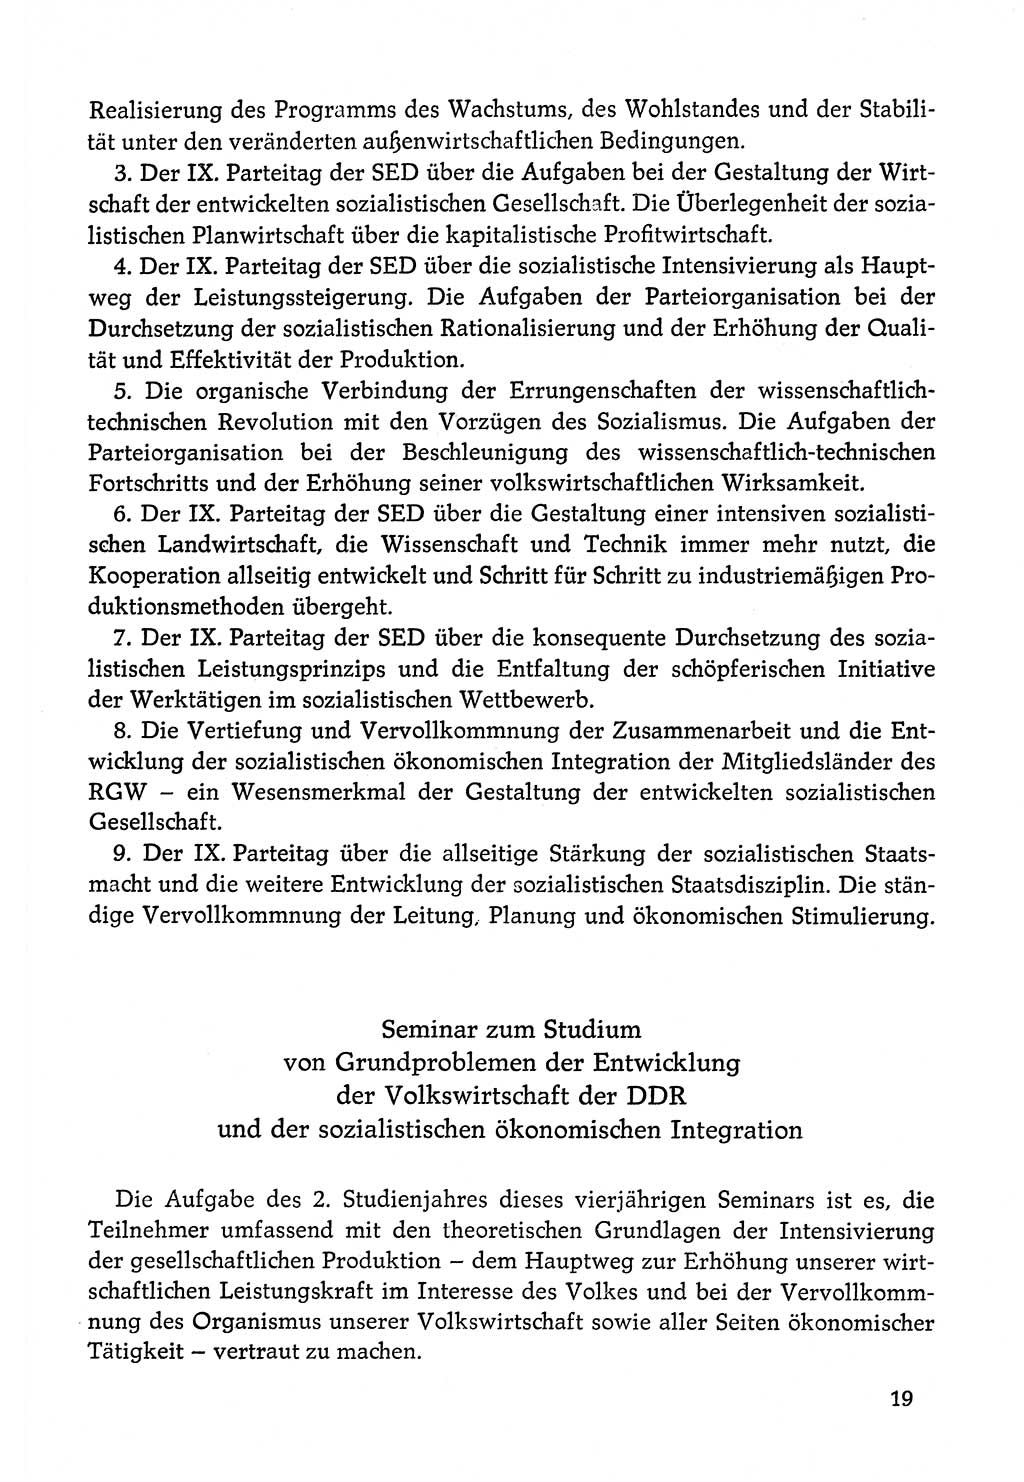 Dokumente der Sozialistischen Einheitspartei Deutschlands (SED) [Deutsche Demokratische Republik (DDR)] 1978-1979, Seite 19 (Dok. SED DDR 1978-1979, S. 19)